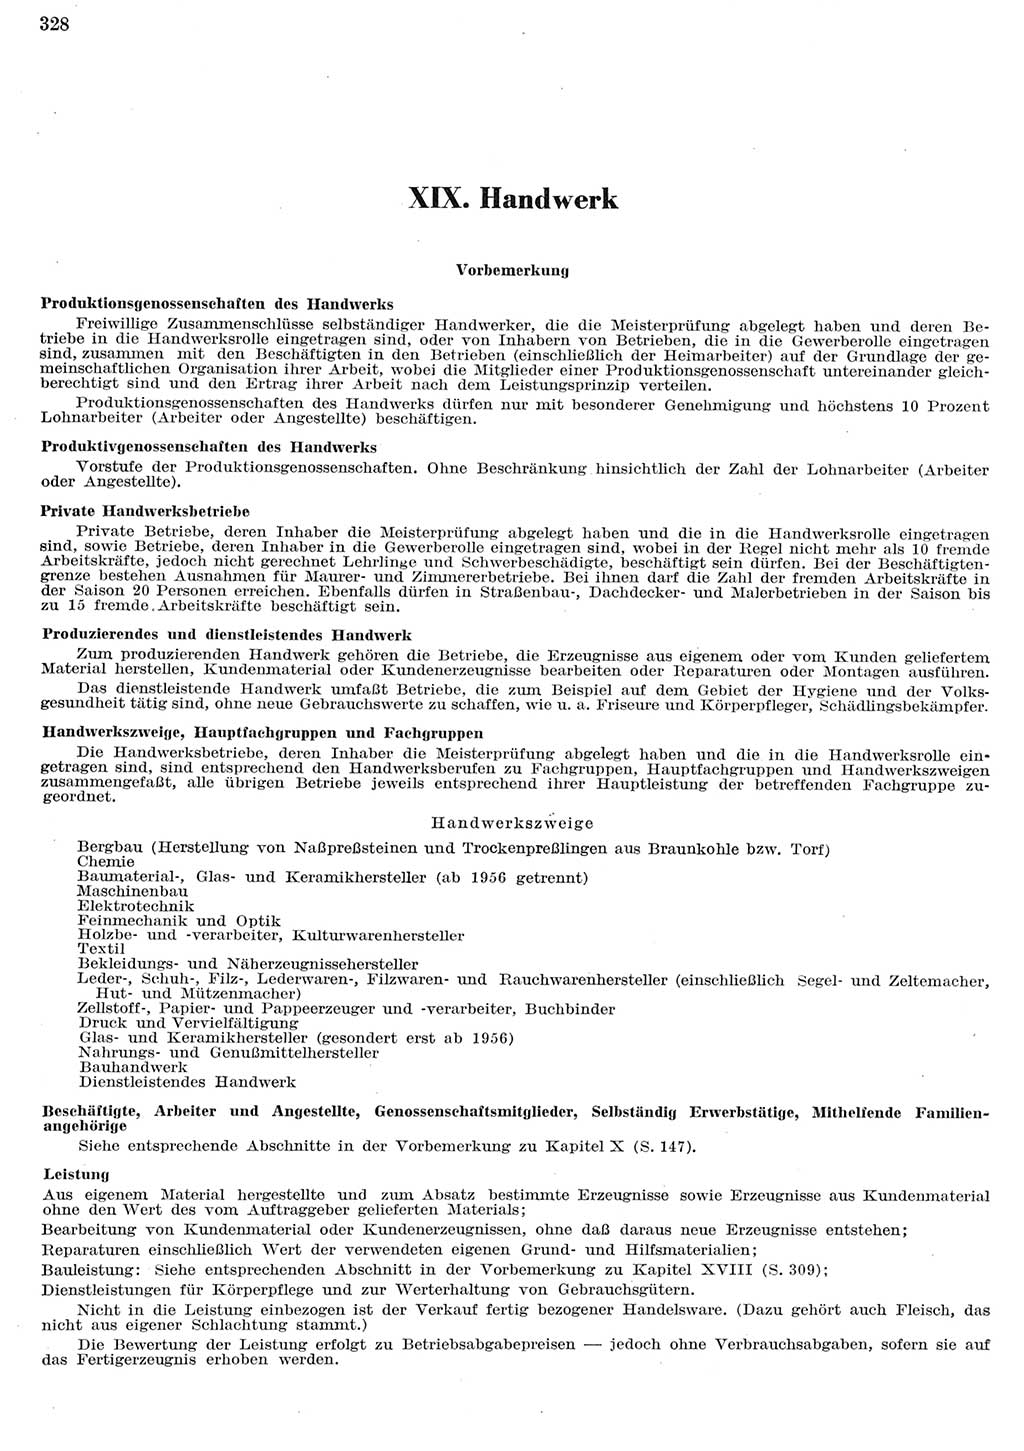 Statistisches Jahrbuch der Deutschen Demokratischen Republik (DDR) 1956, Seite 328 (Stat. Jb. DDR 1956, S. 328)